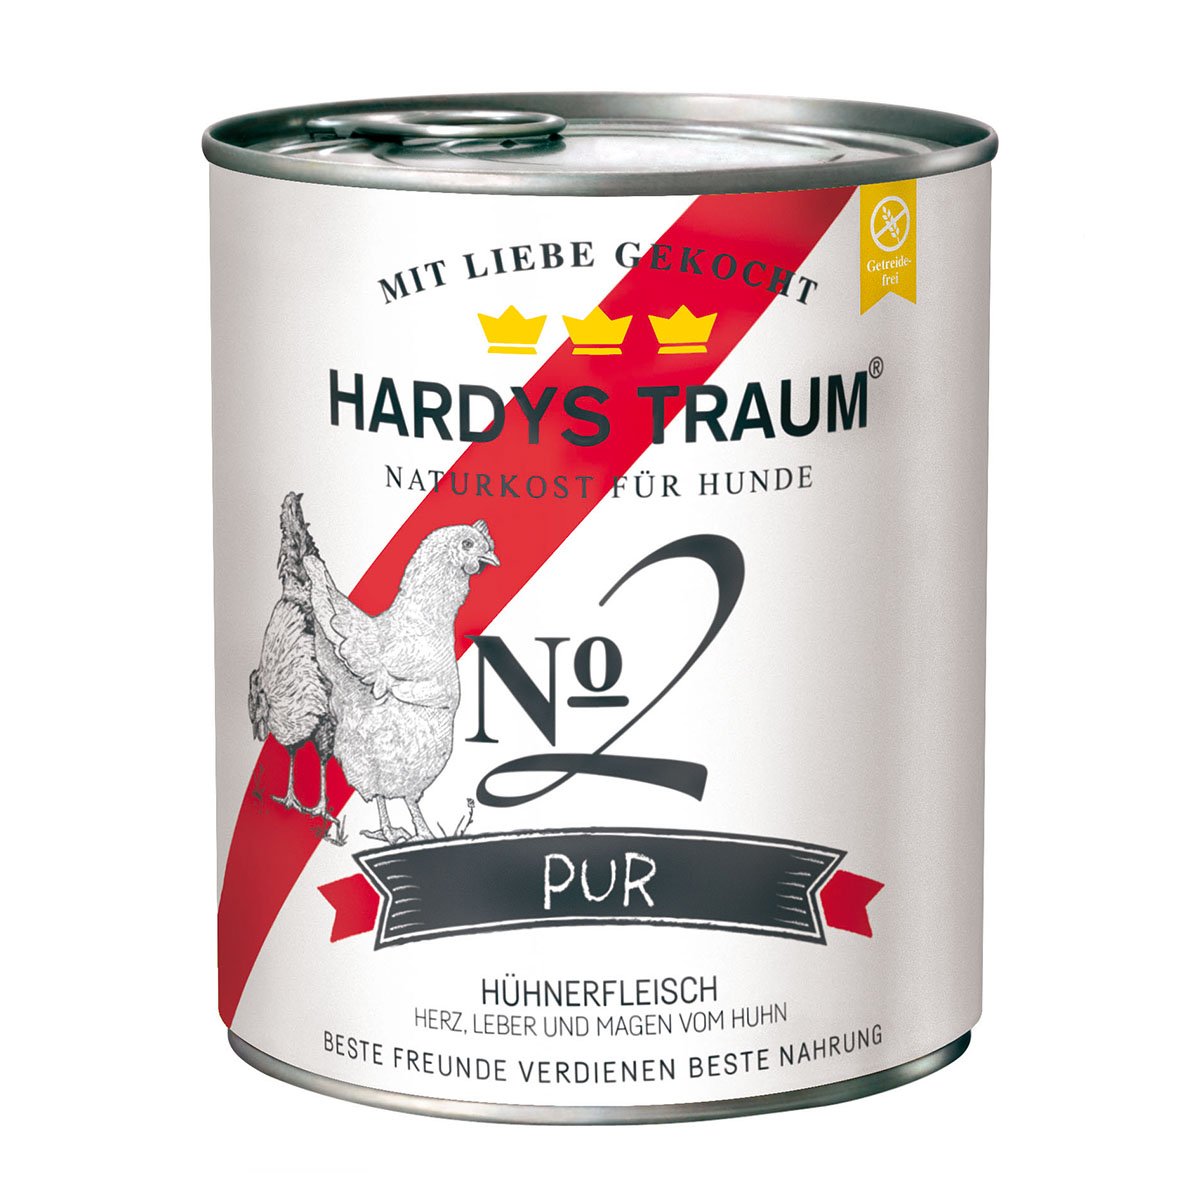 HARDYS TRAUM PUR No. 2 - Huhn -, 1 x 800 g - glücksthaler.ch